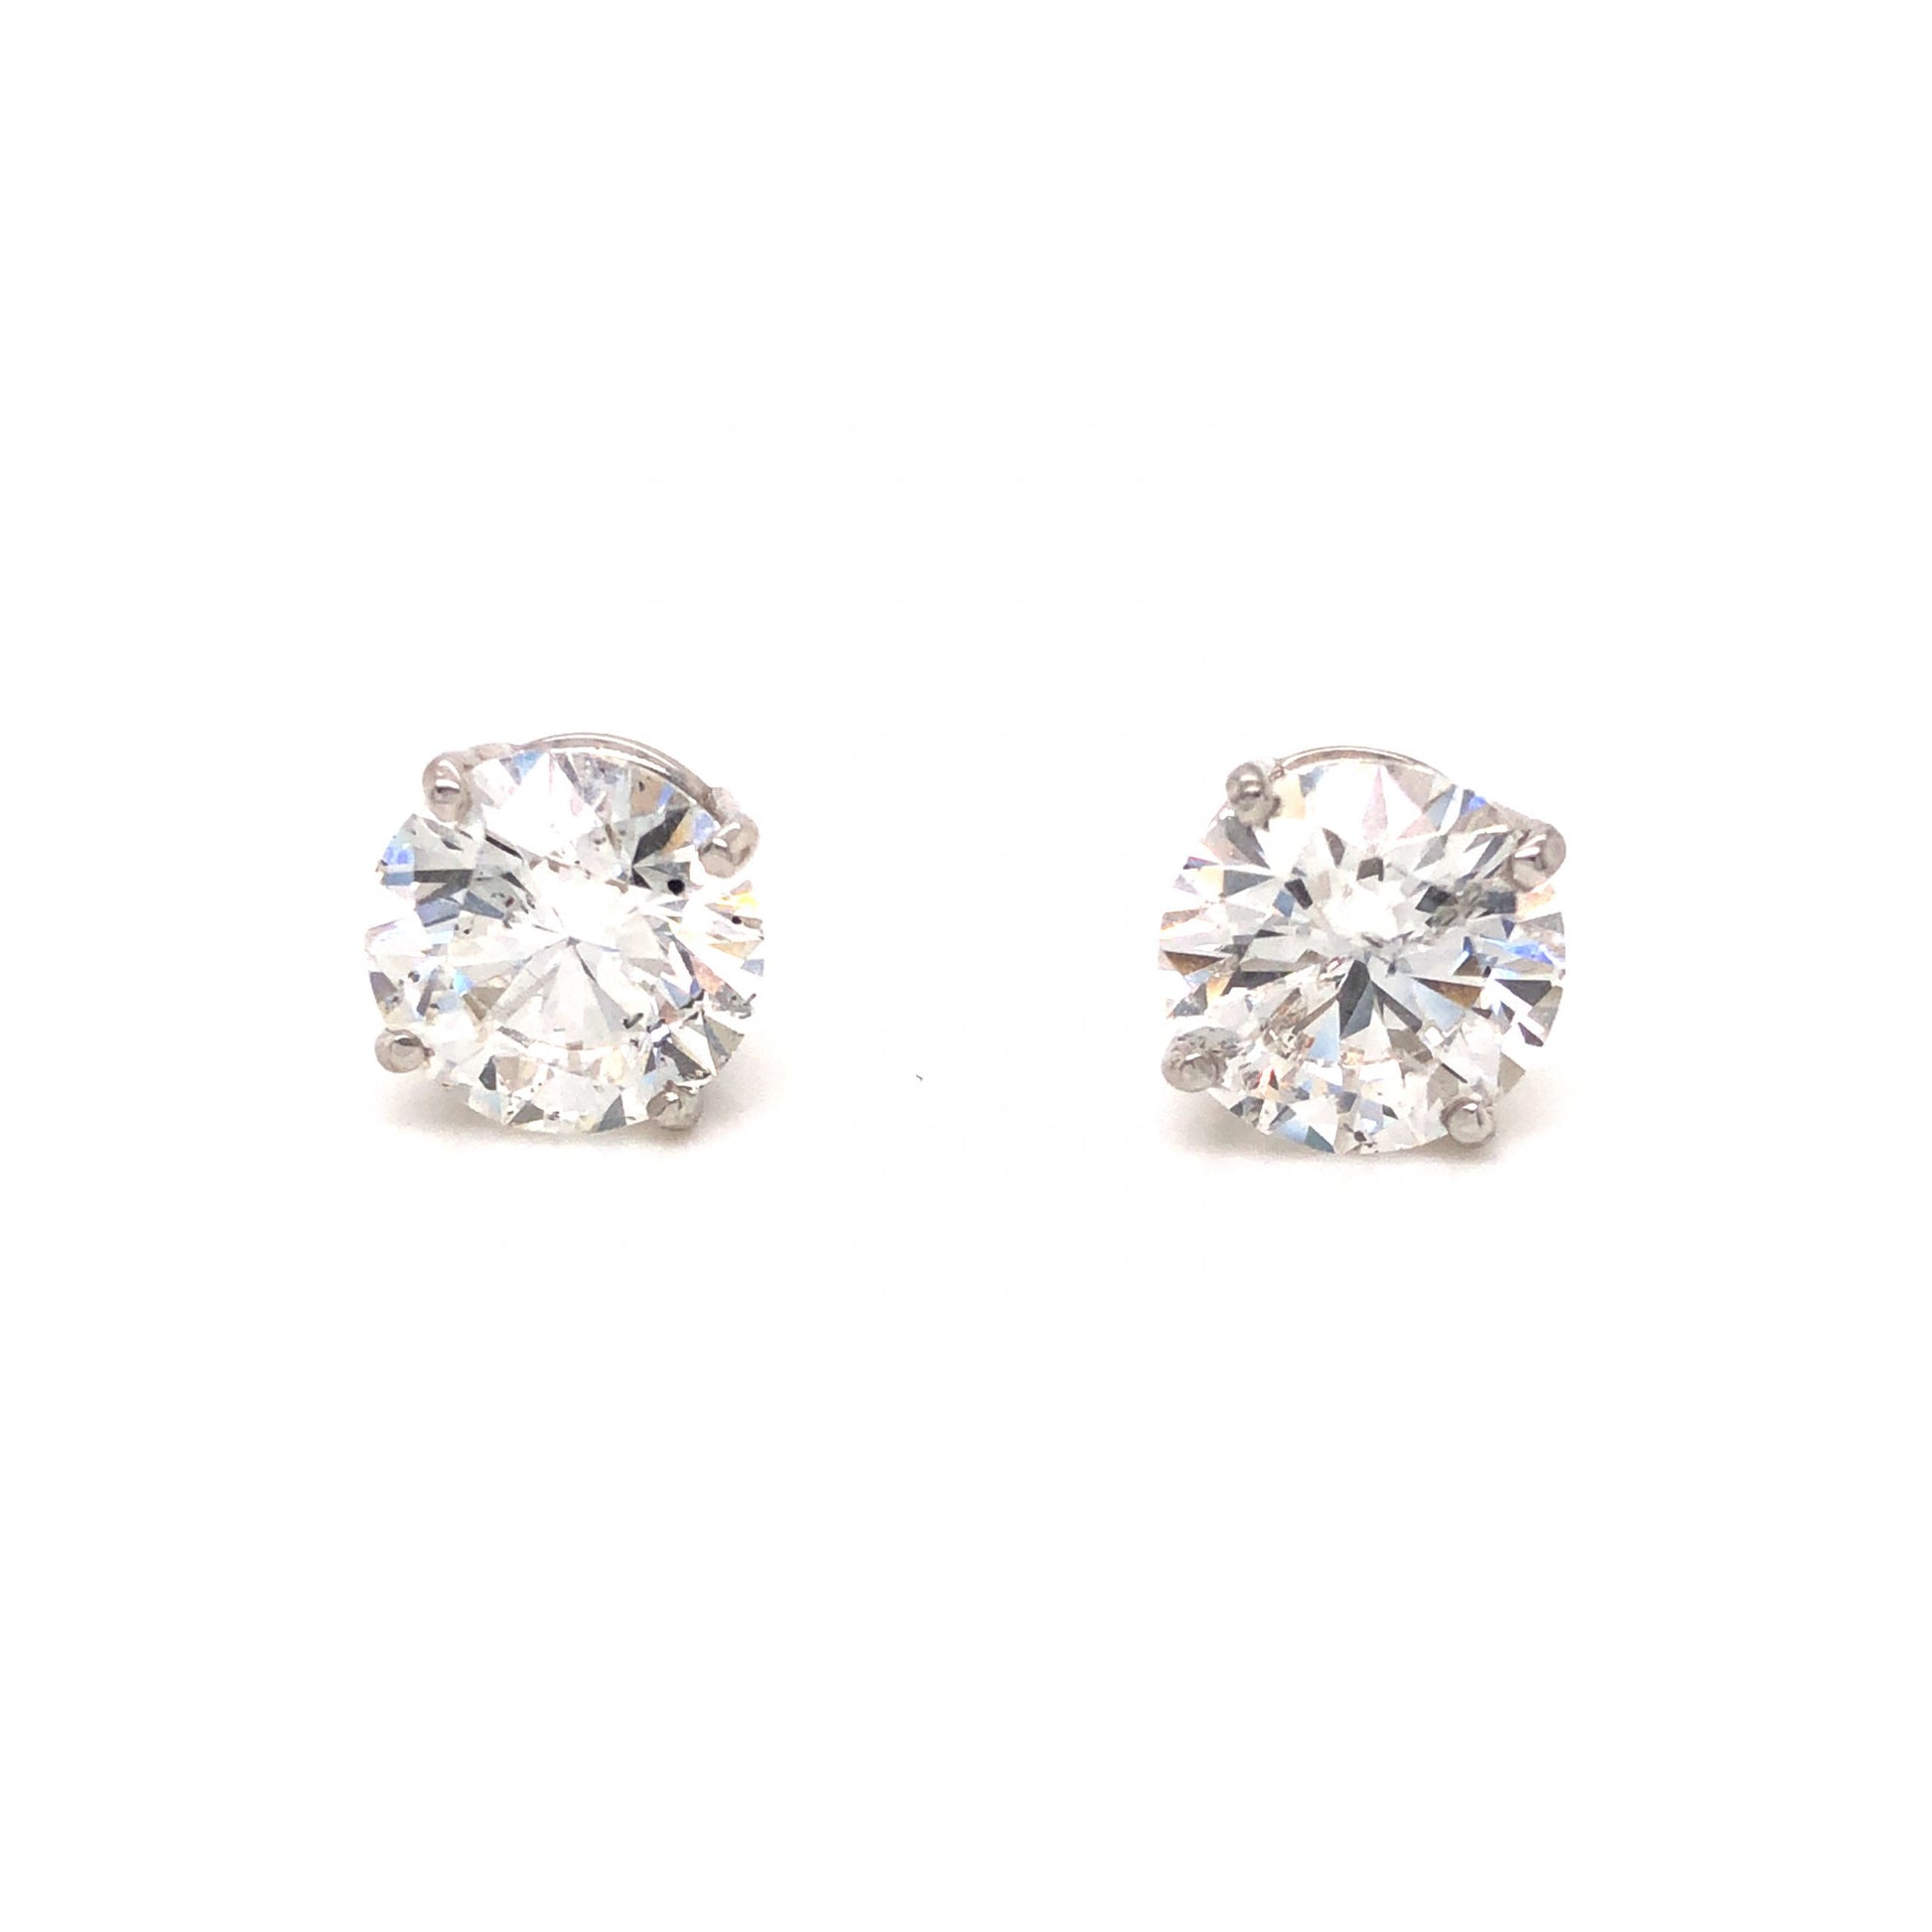 4.10 GIA Diamond Stud Earrings in 14k White Gold